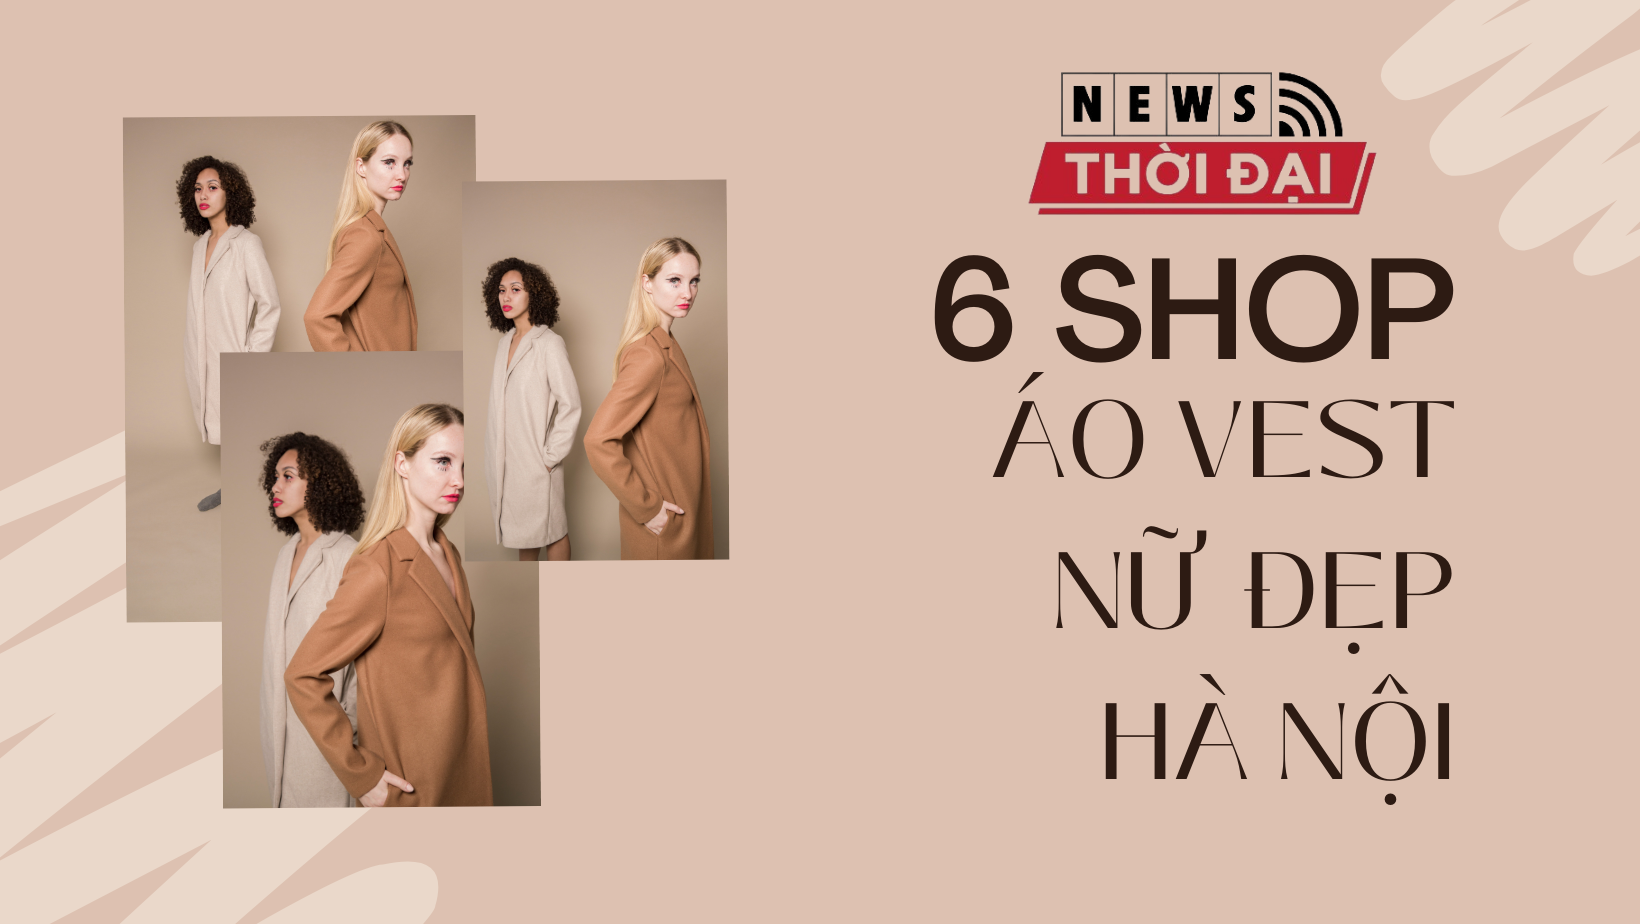 Top 7 cửa hàng bán áo vest nữ đẹp Hà Nội từ bình dân đến cao cấp